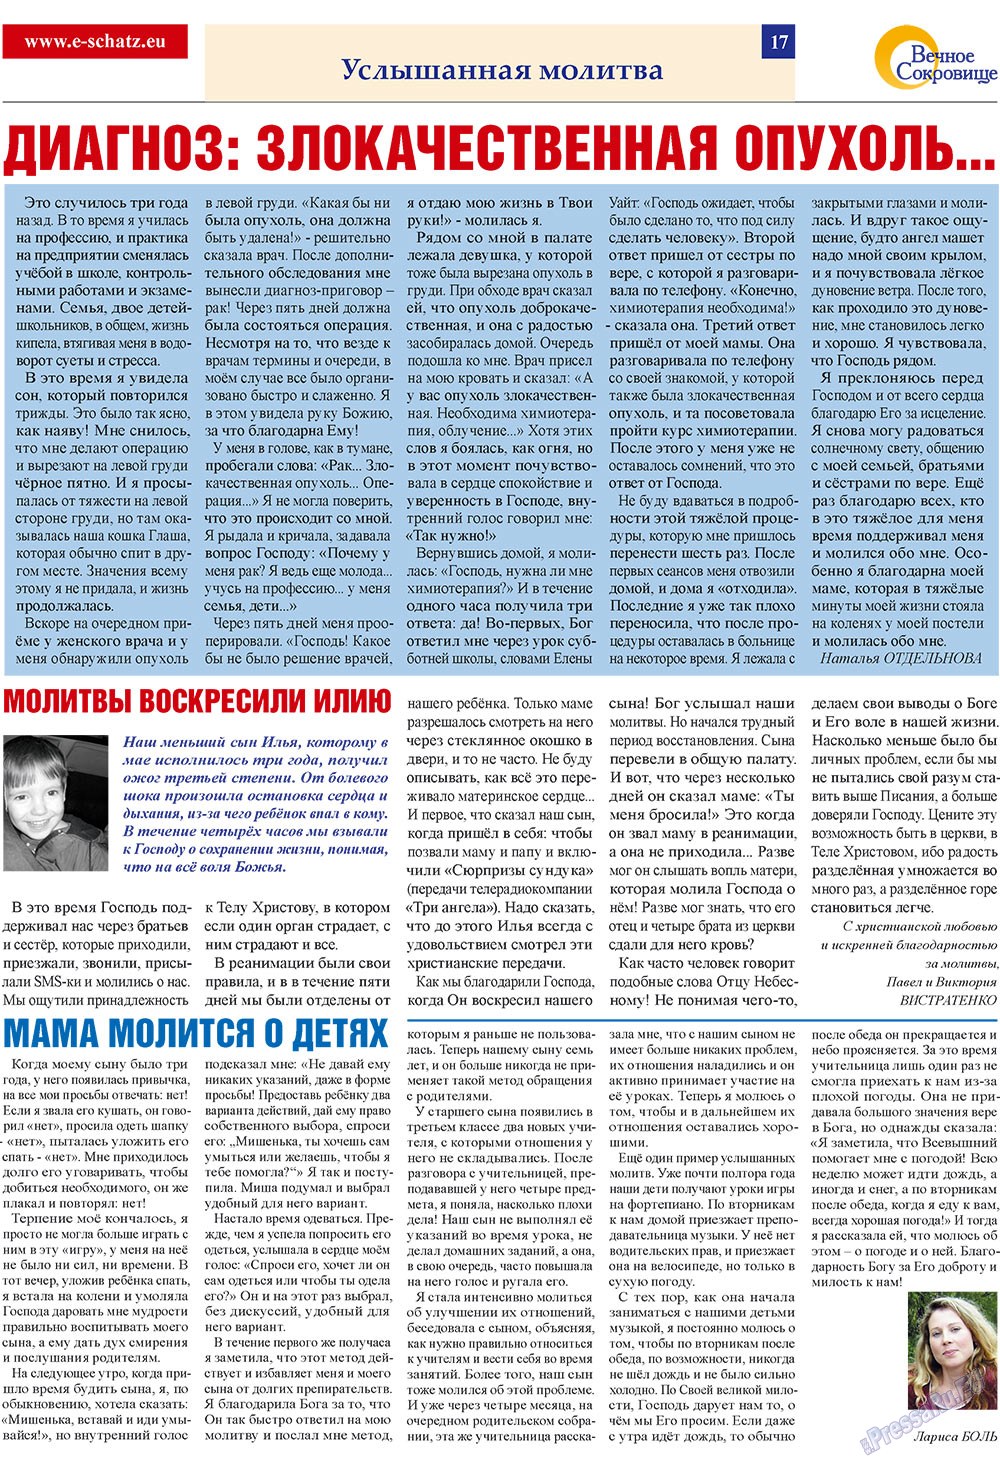 Вечное сокровище (газета). 2009 год, номер 2, стр. 17